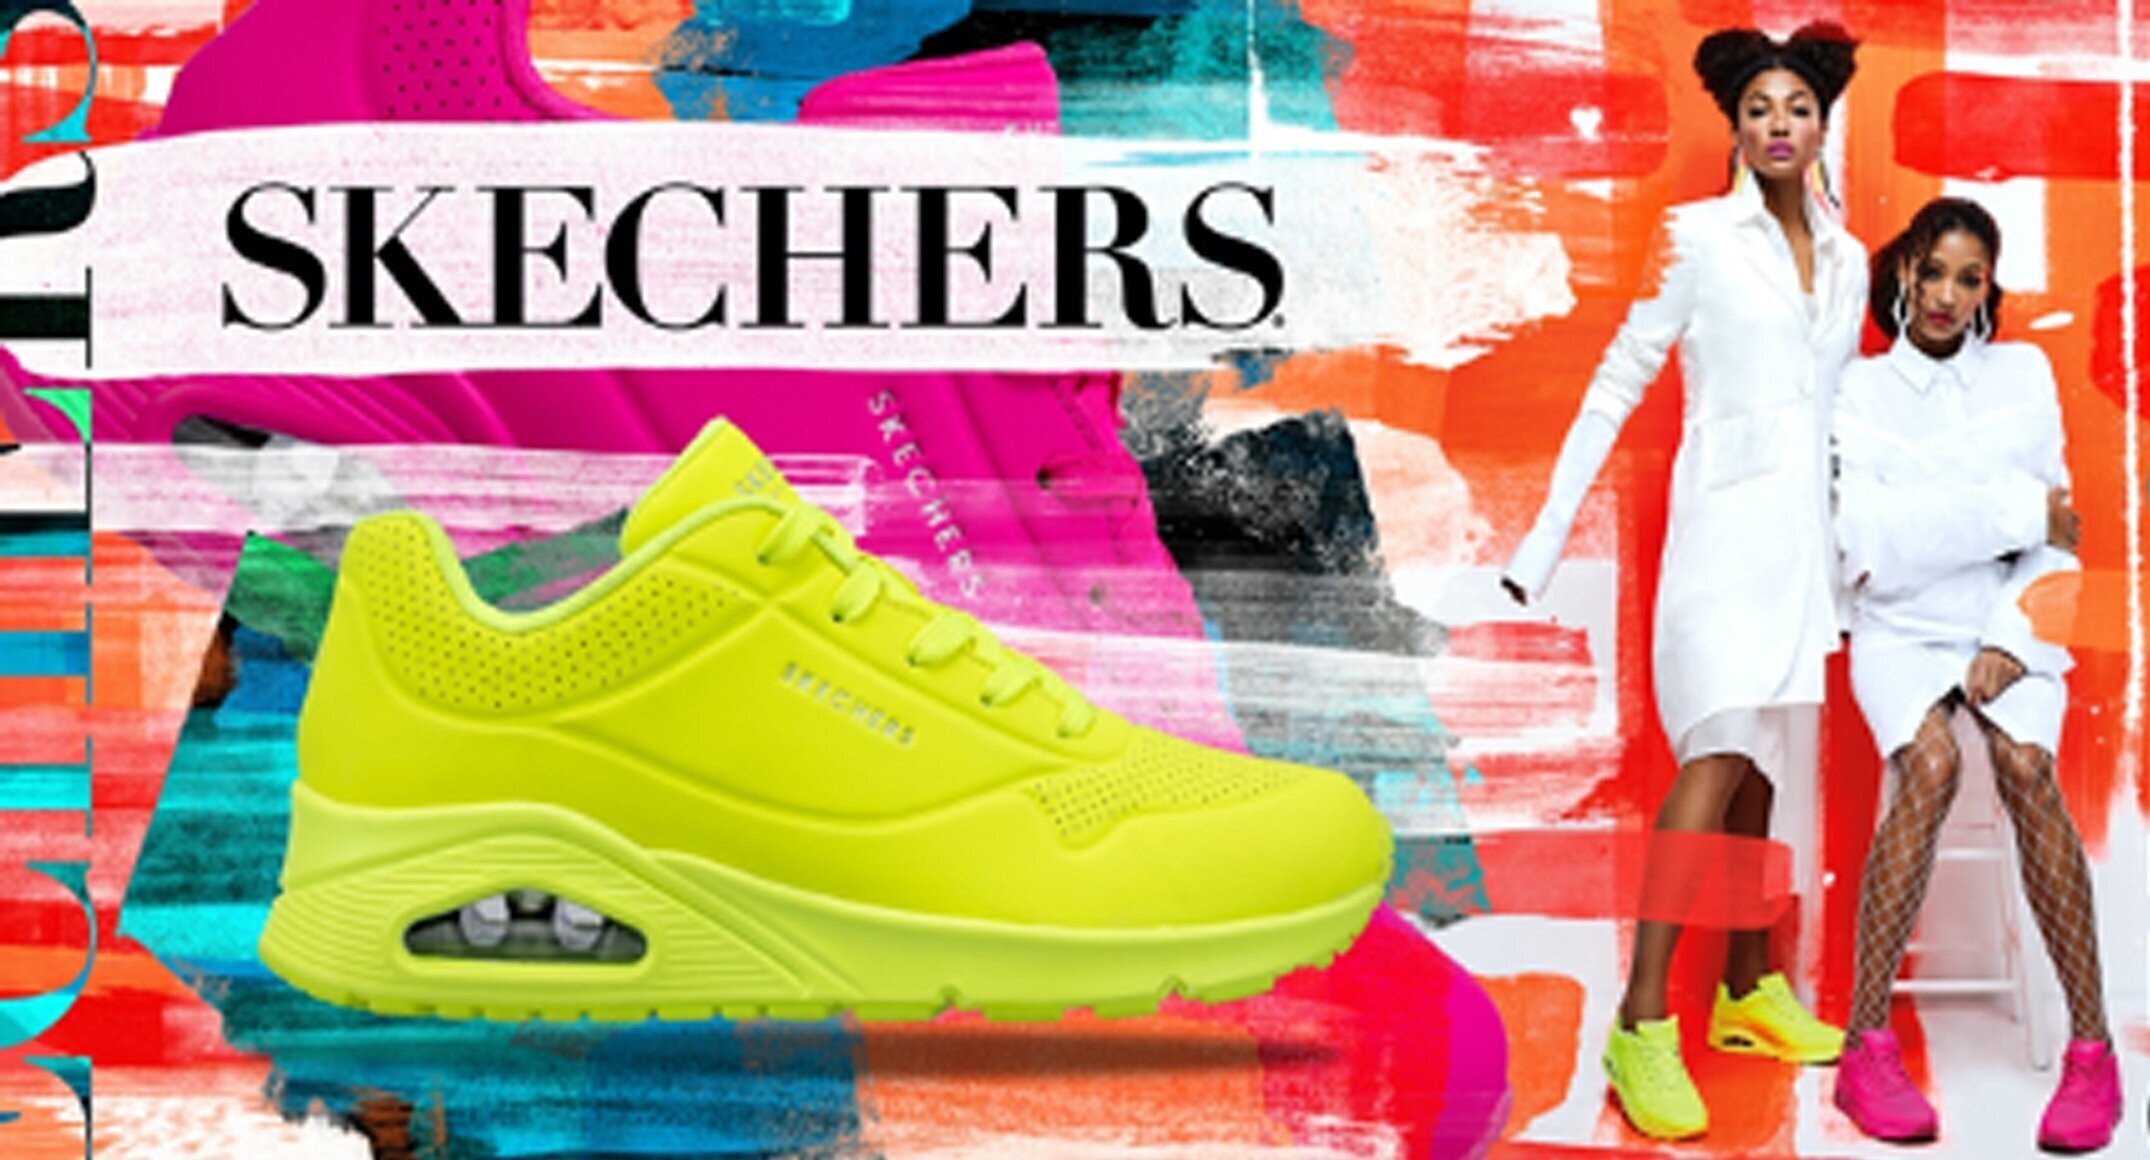 Skechers "Neon is het nieuwe nude" 